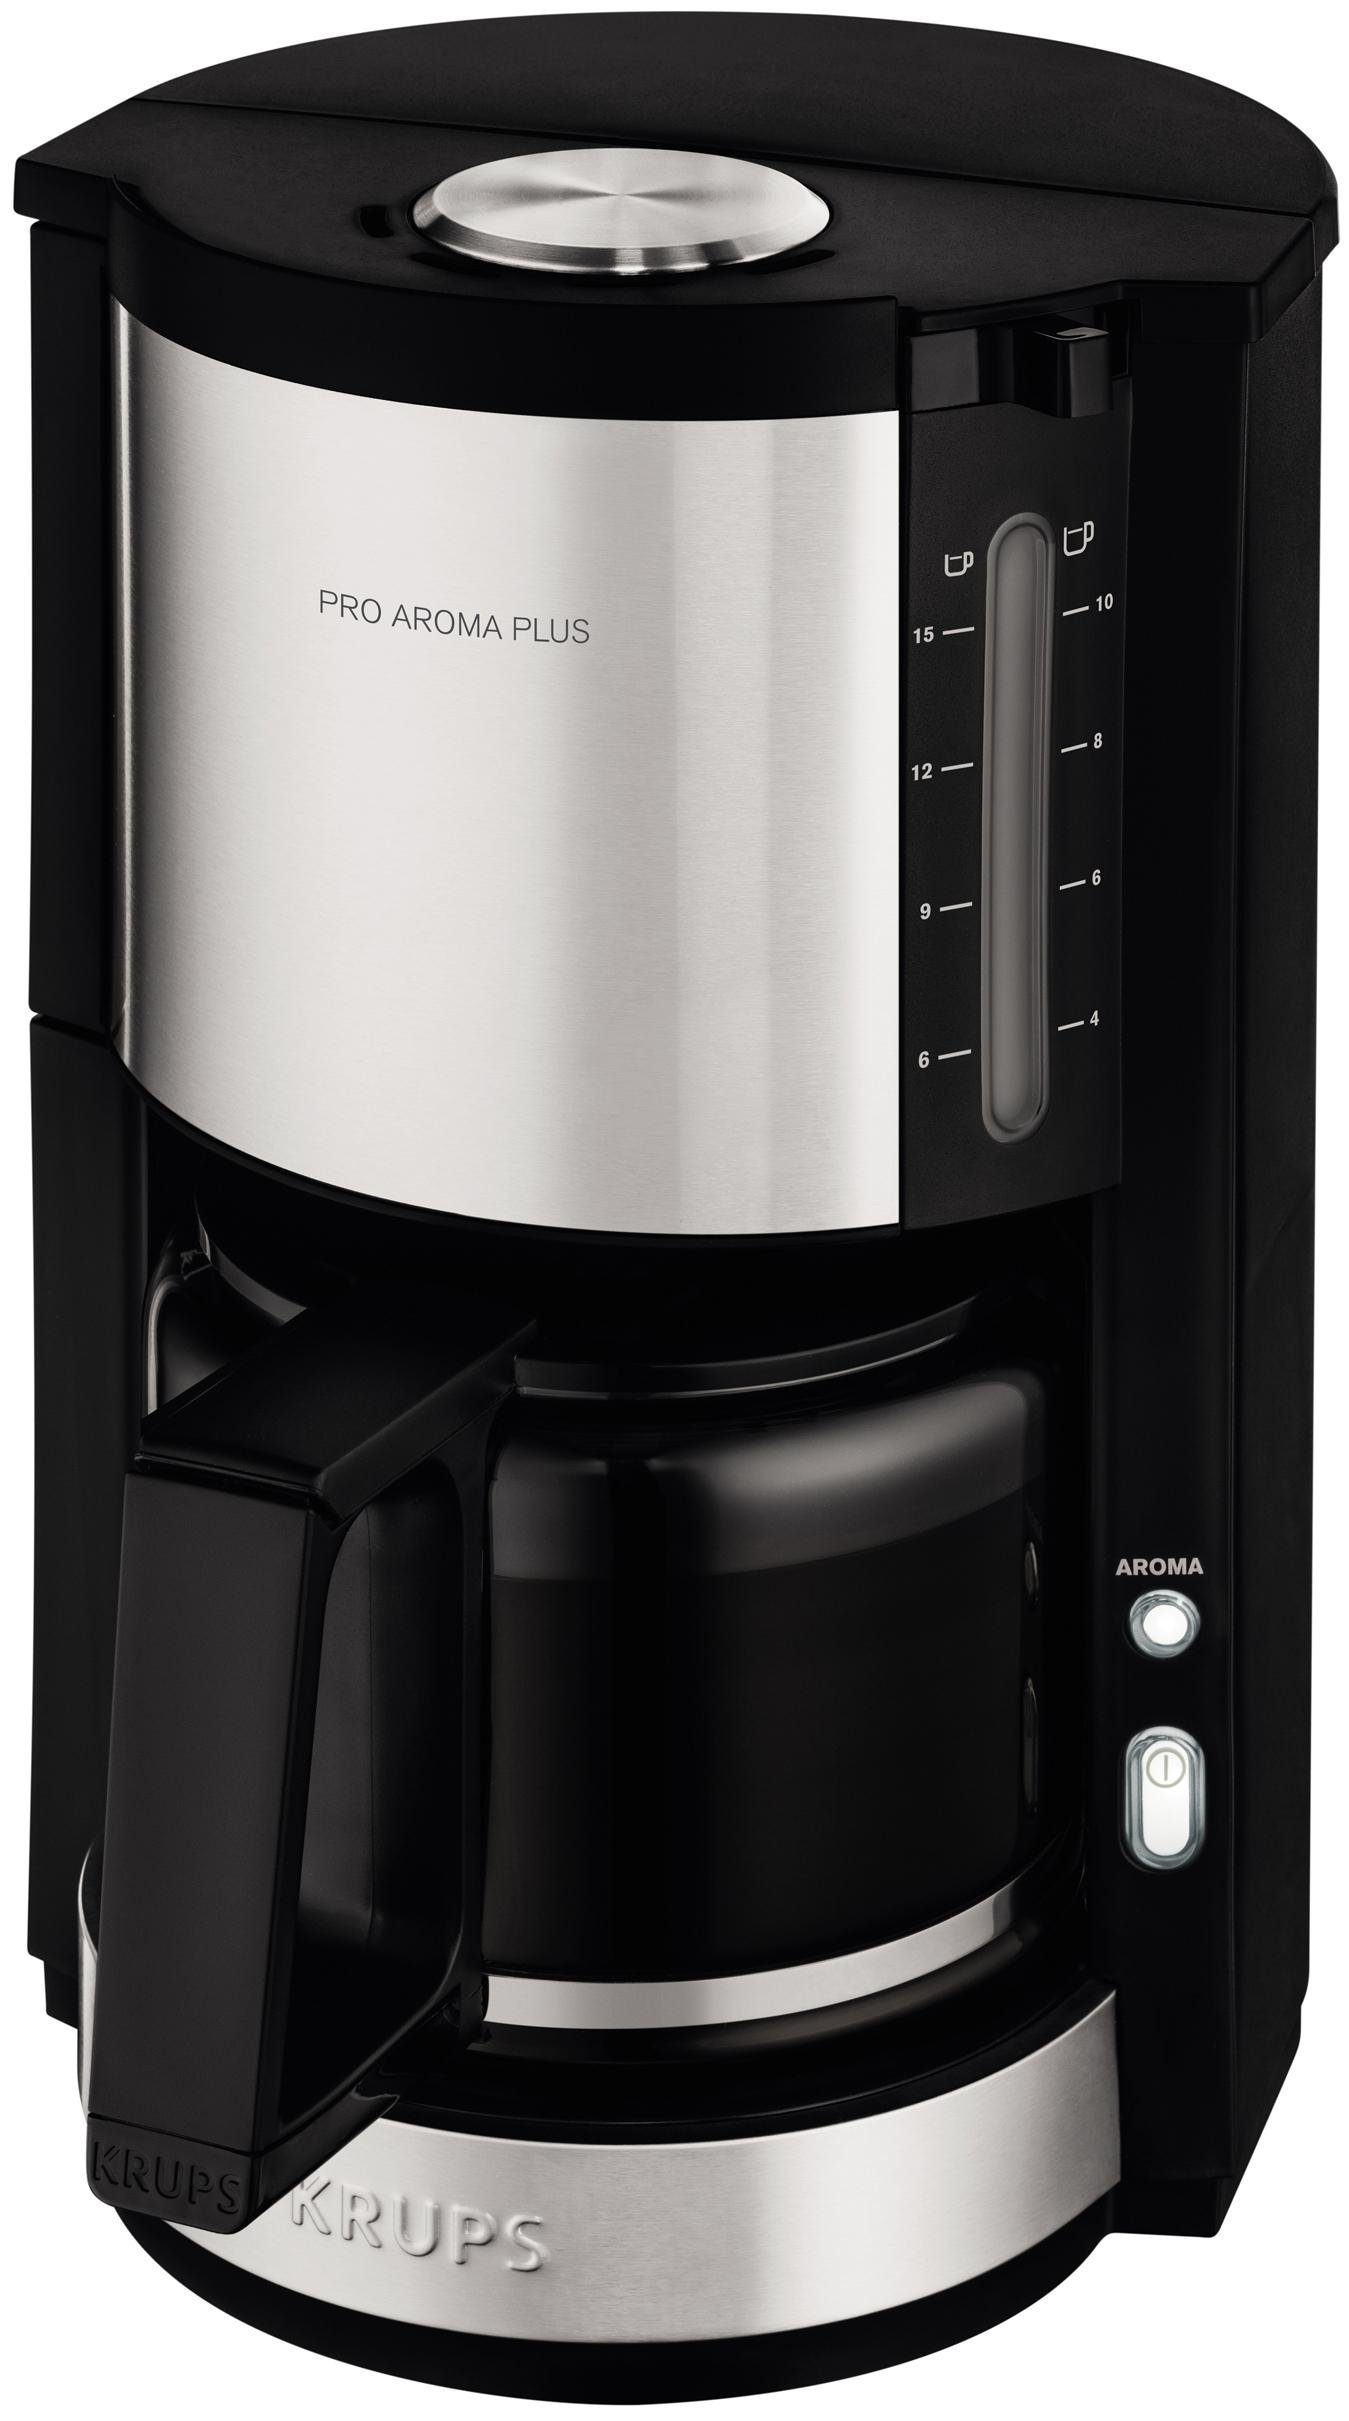 KRUPS koffiezetapparaat ProAroma Plus KM321 met glazen kan, edelstaal-zwart